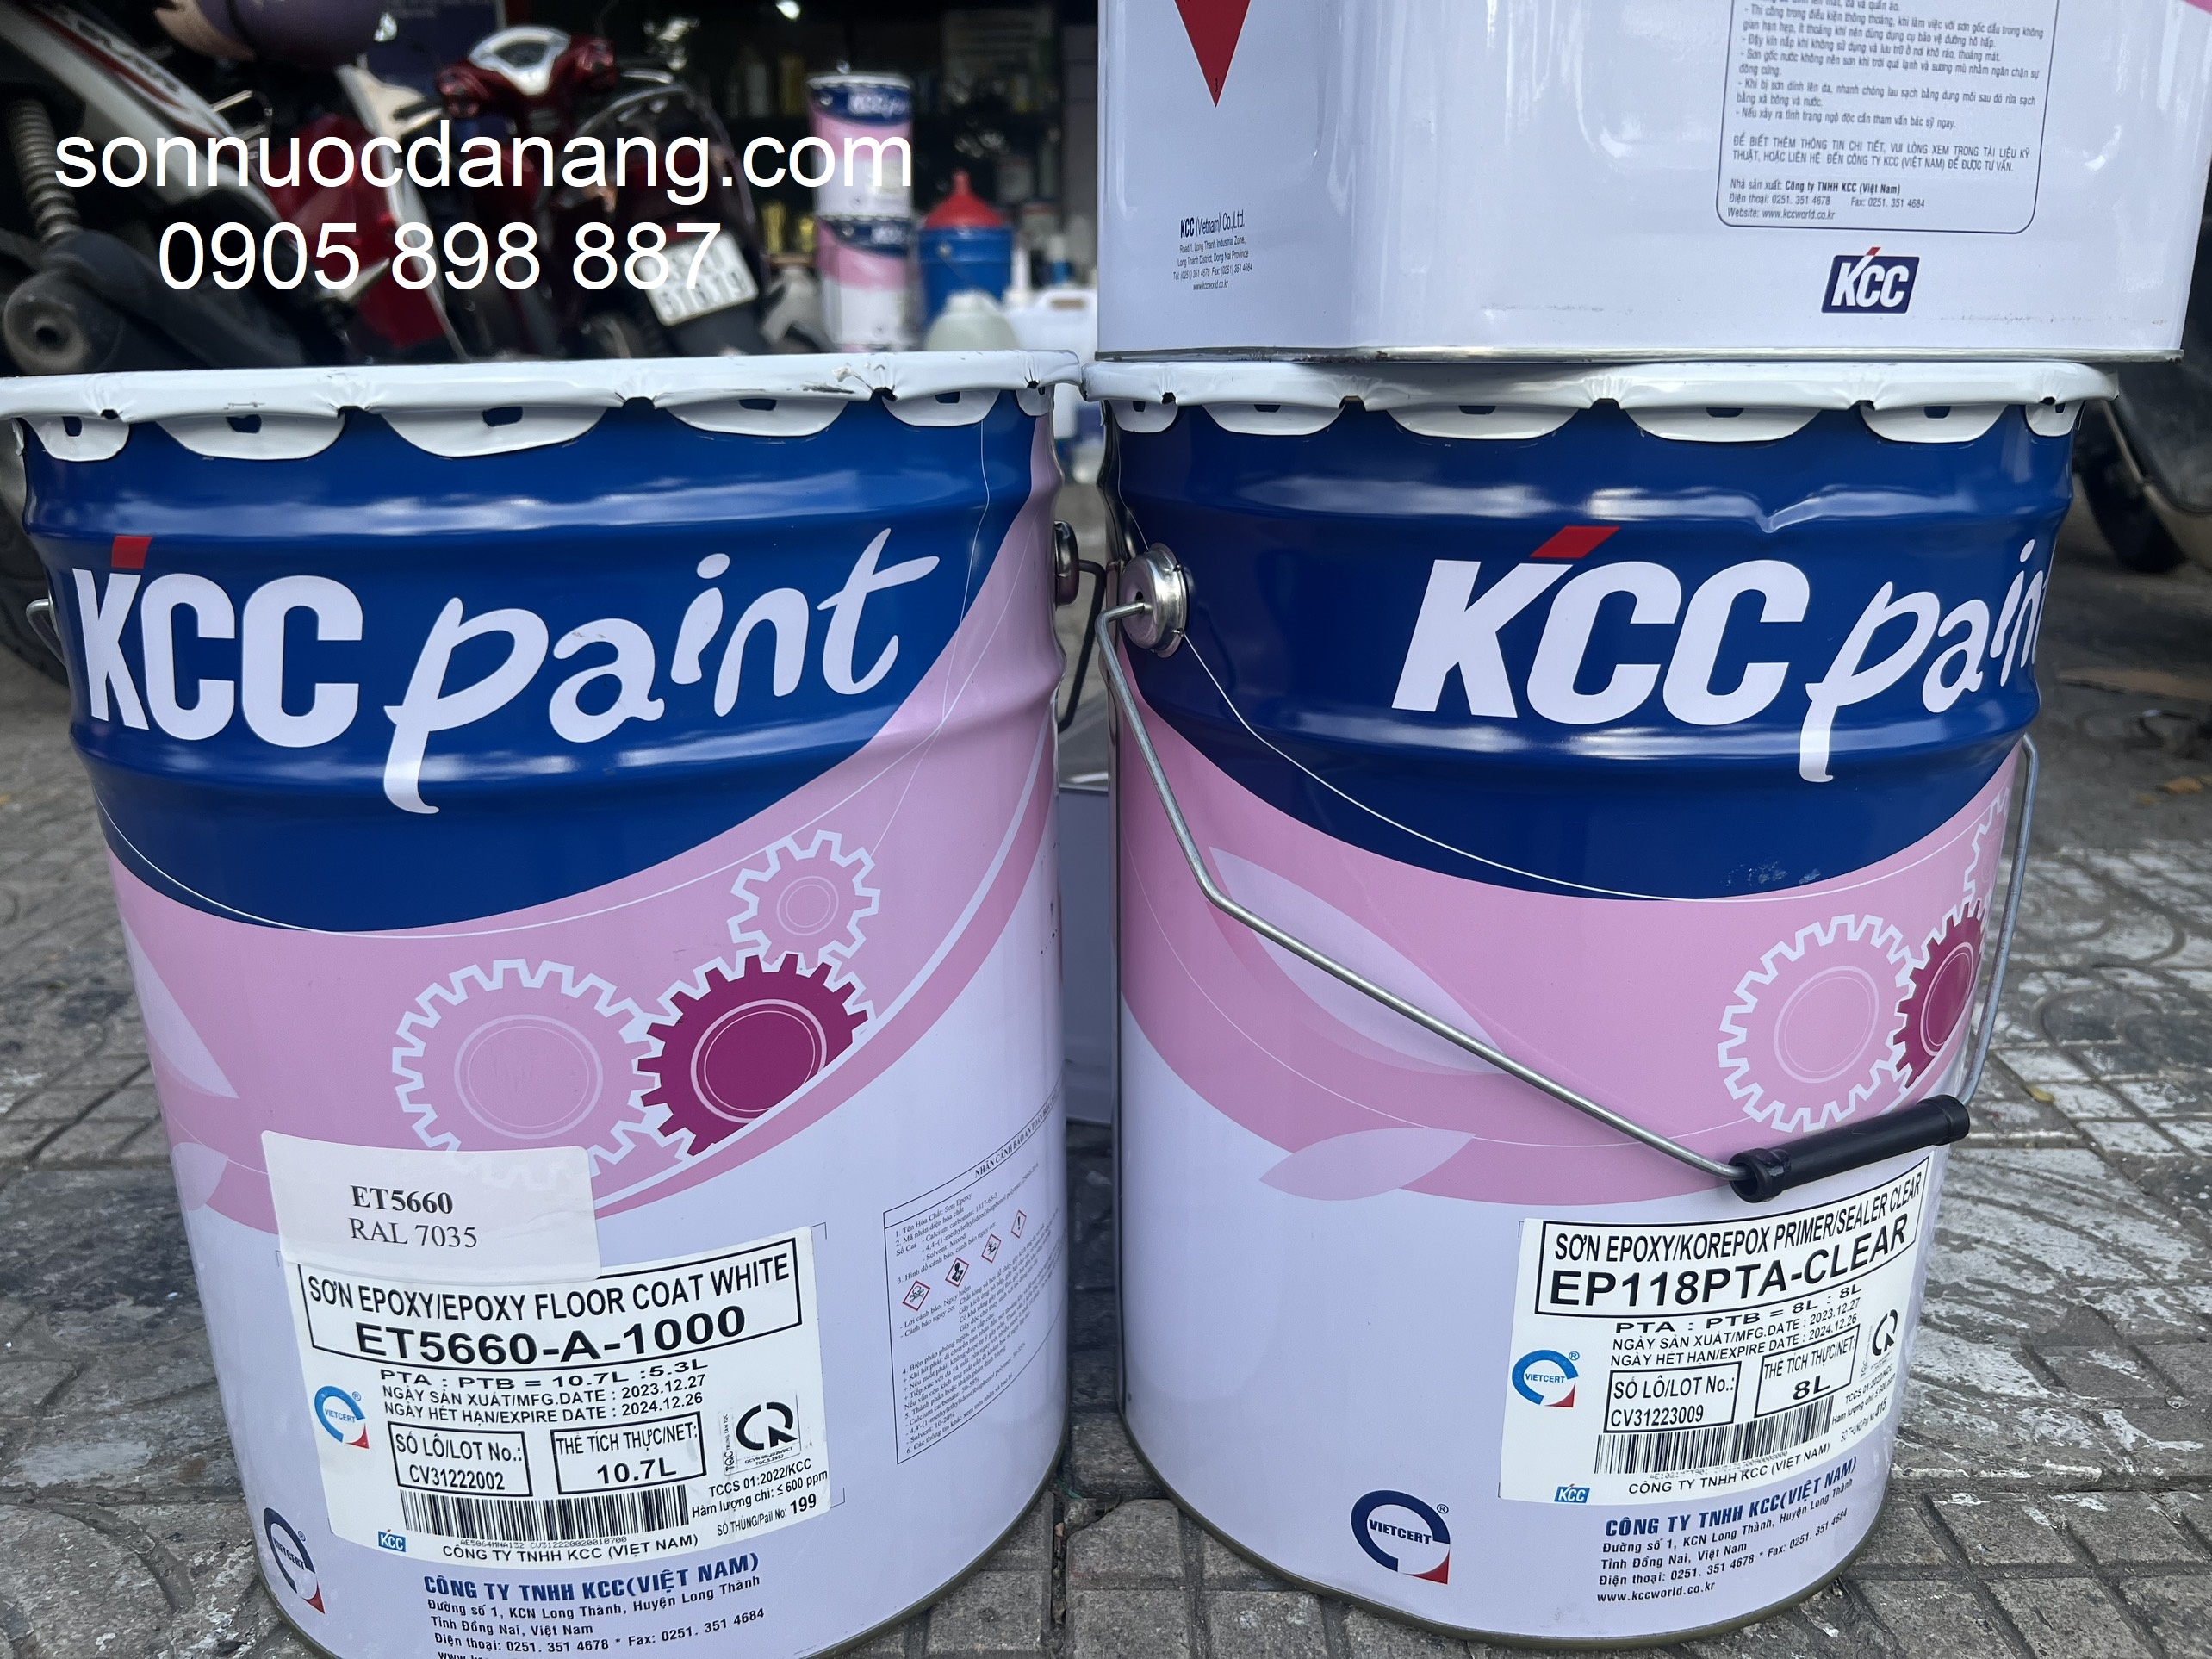 BẢNG GIÁ SƠN EPOXY KCC Tại Đà Nẵng Hà Nội Hồ Chí Minh là Sản phẩm của Công ty sơn KCC Việt Nam bao gồm sơn công nghiệp, sơn epoxy,  sơn hàng hải và giàn khoan, sơn container, sơn ô tô, sơn tole, sơn trang trí và sơn sàn. Sơn KCC sản xuất theo quy trình ISO-9001, ISO-14001 và đạt được hầu hết các tiêu chuẩn về vệ sinh, an toàn thực phẩm và chống ăn mòn.